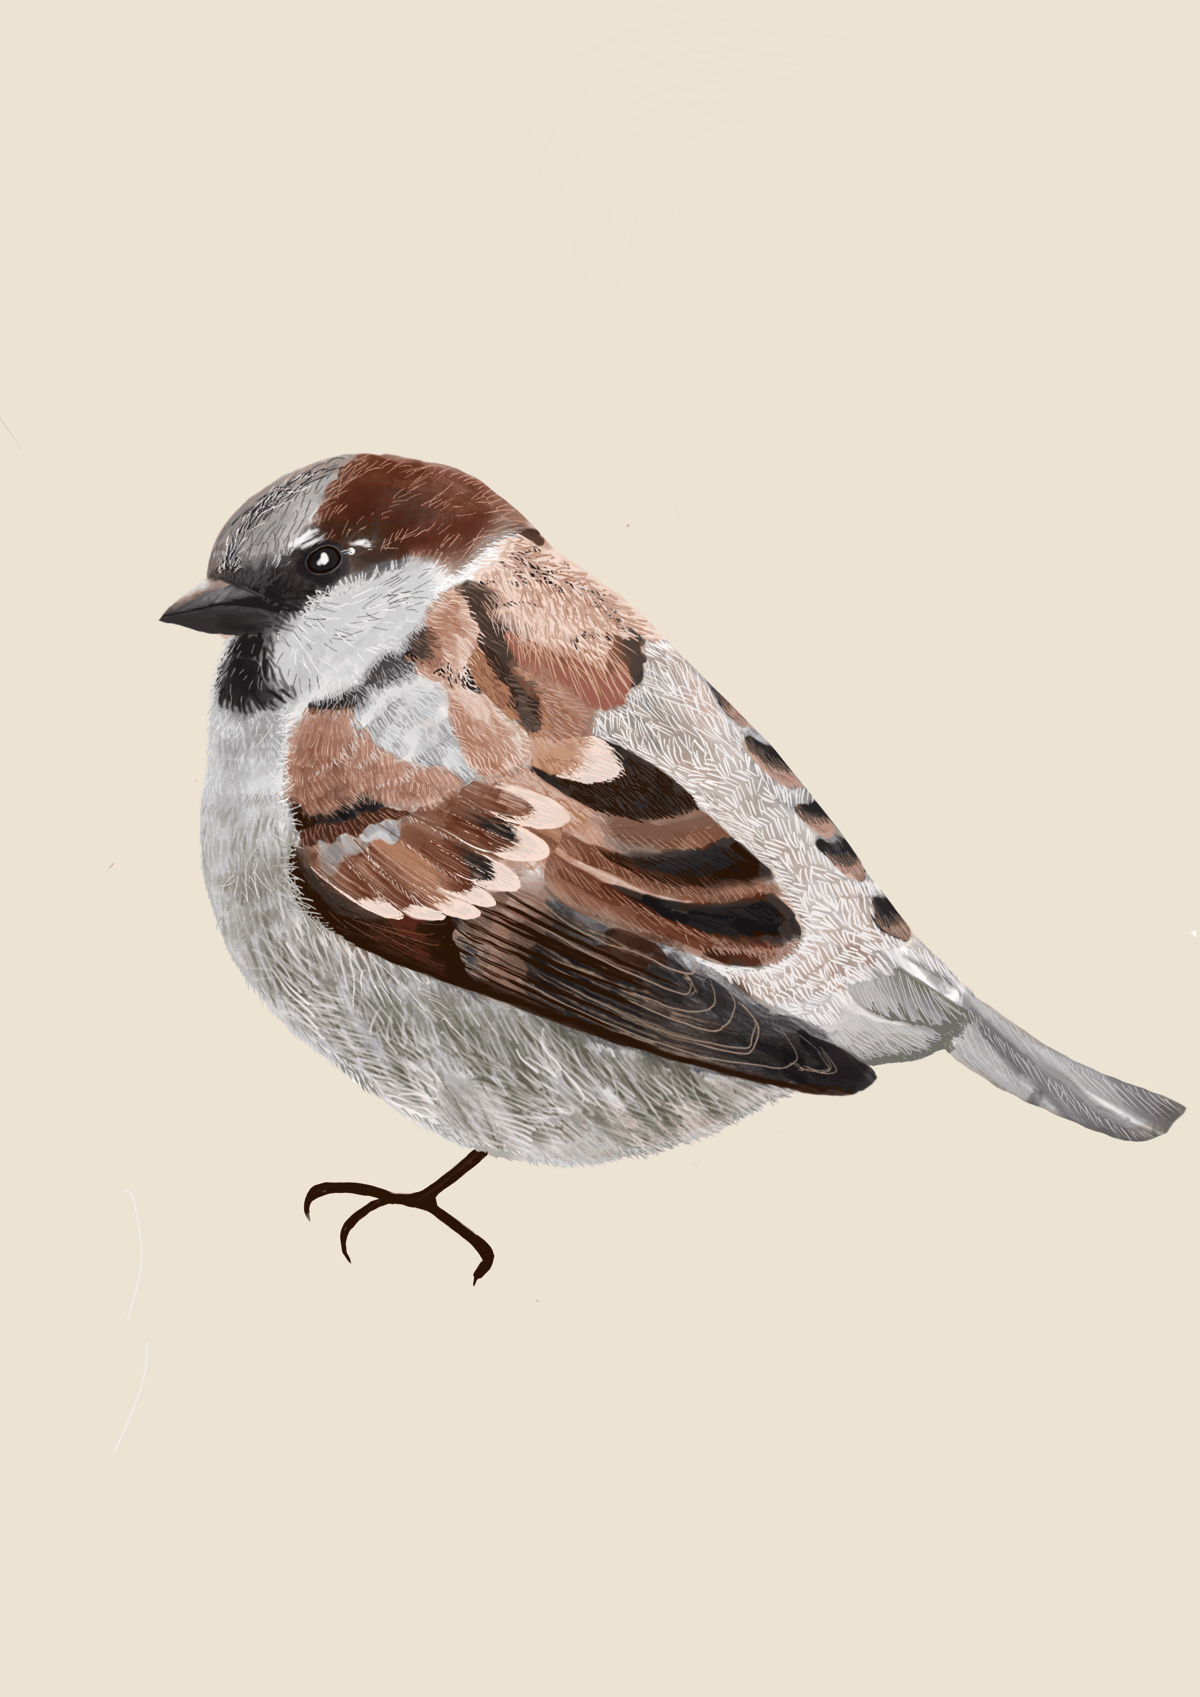 Sparrow Print & Cards